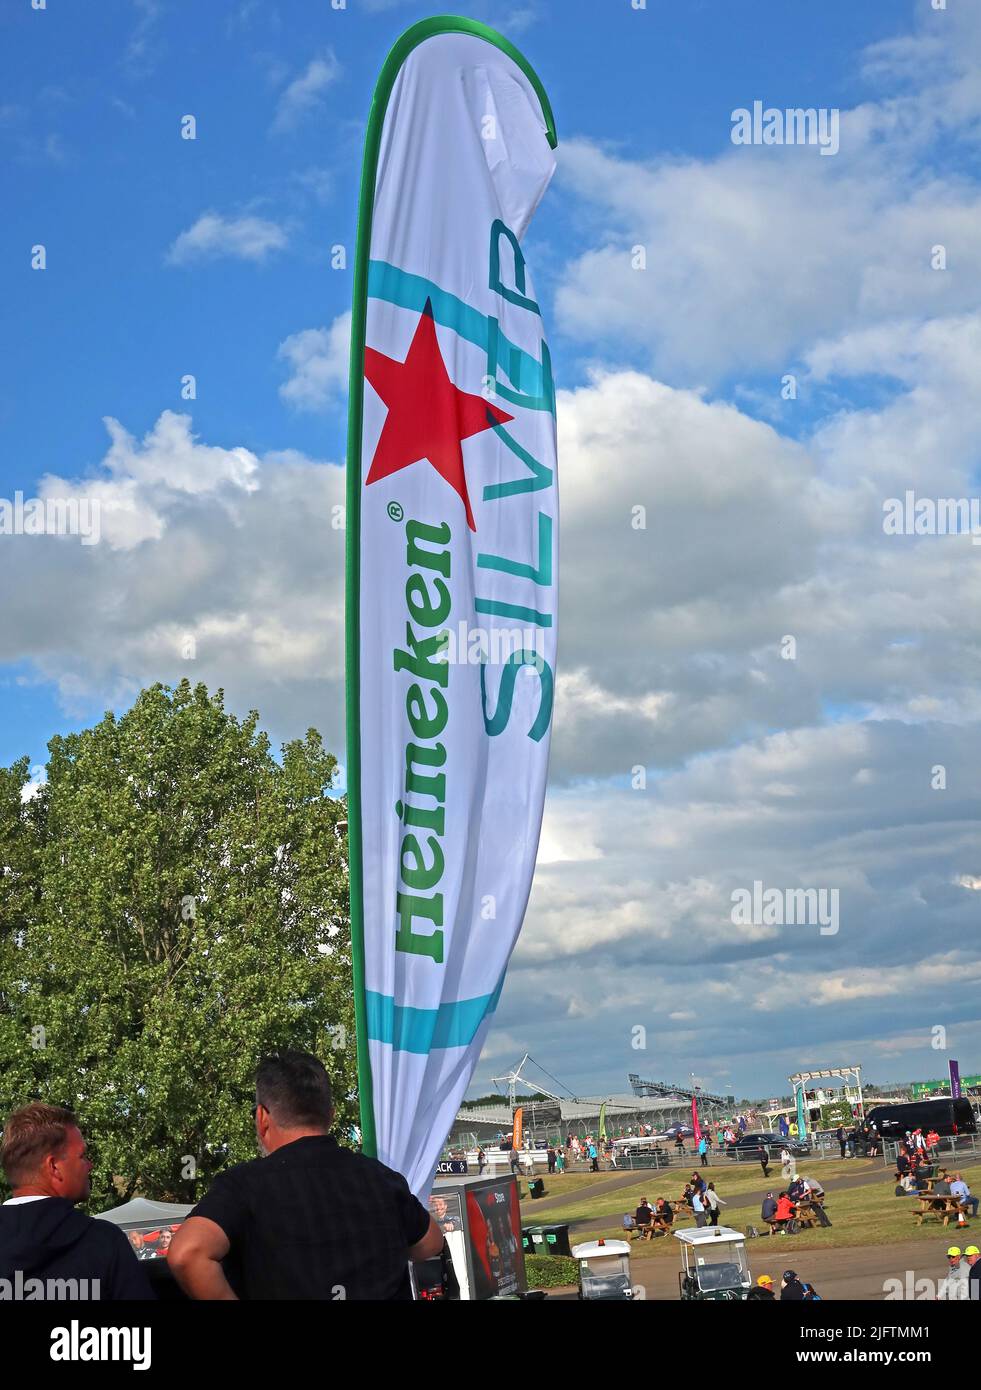 Werbebanner für Heineken Silver, 4, 4percent Bier, auf dem Silverstone Circuit, Silverstone Village, Towcester, Northamptonshire, England, Großbritannien, NN Stockfoto